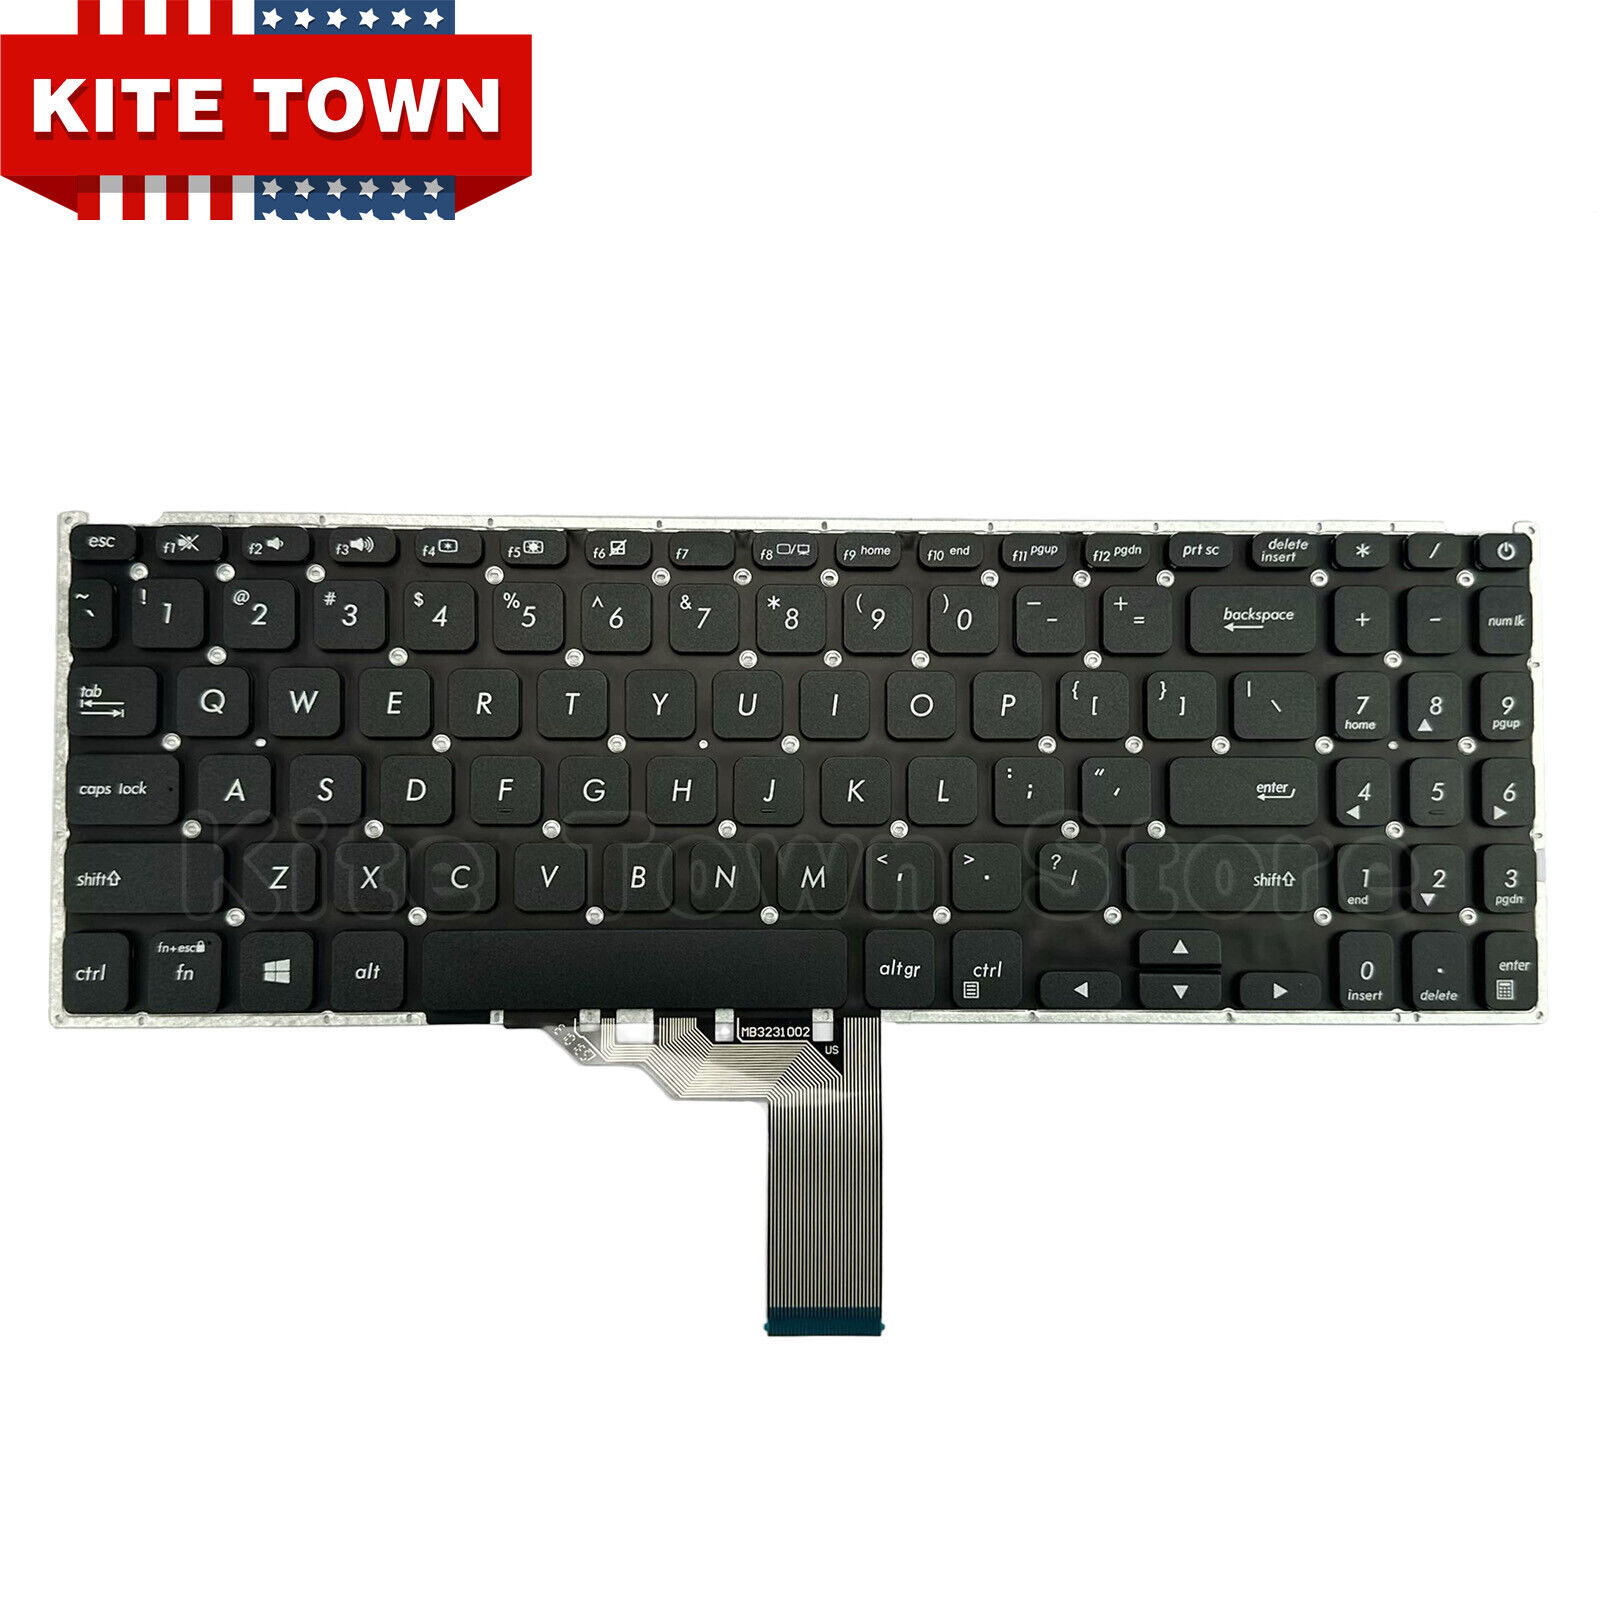 Genuine US Keyboard for Asus Vivobook F512J X512J X512JA X512 X512D X512FA X512F